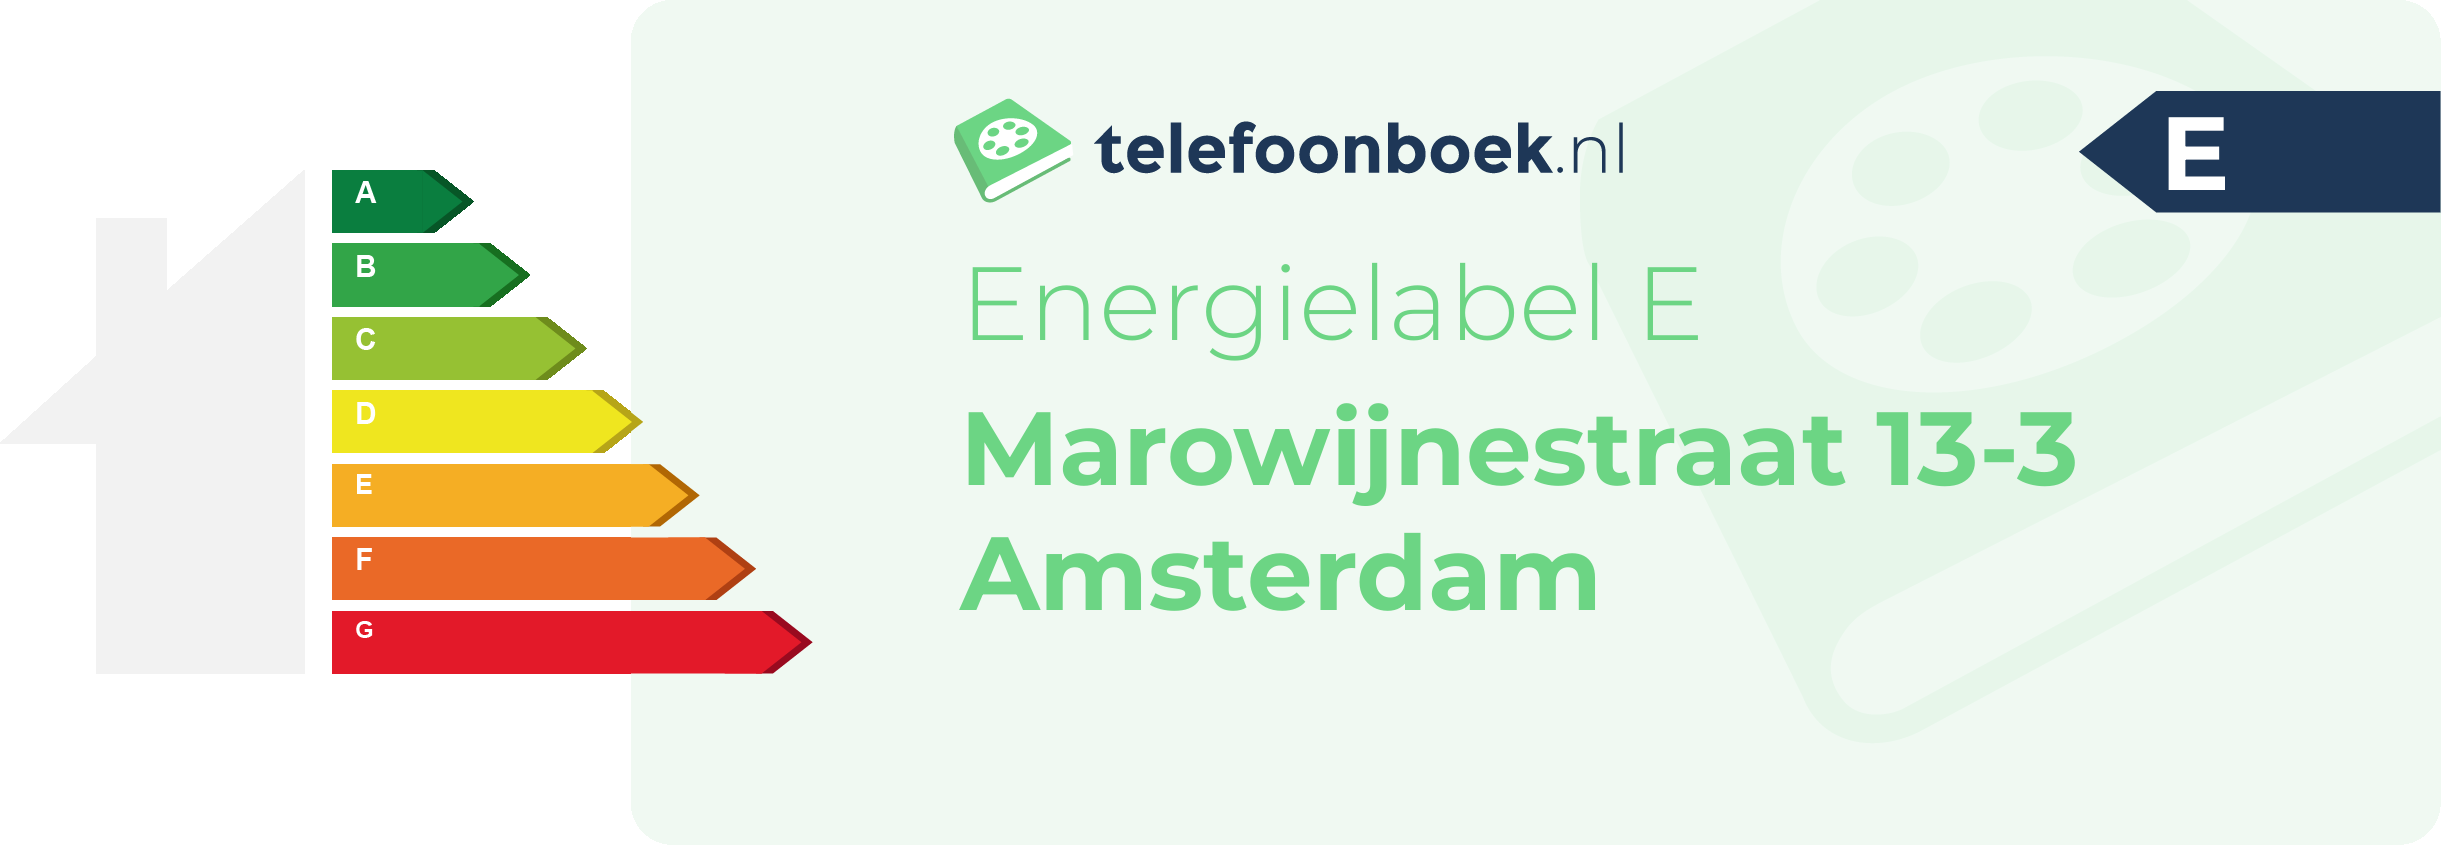 Energielabel Marowijnestraat 13-3 Amsterdam